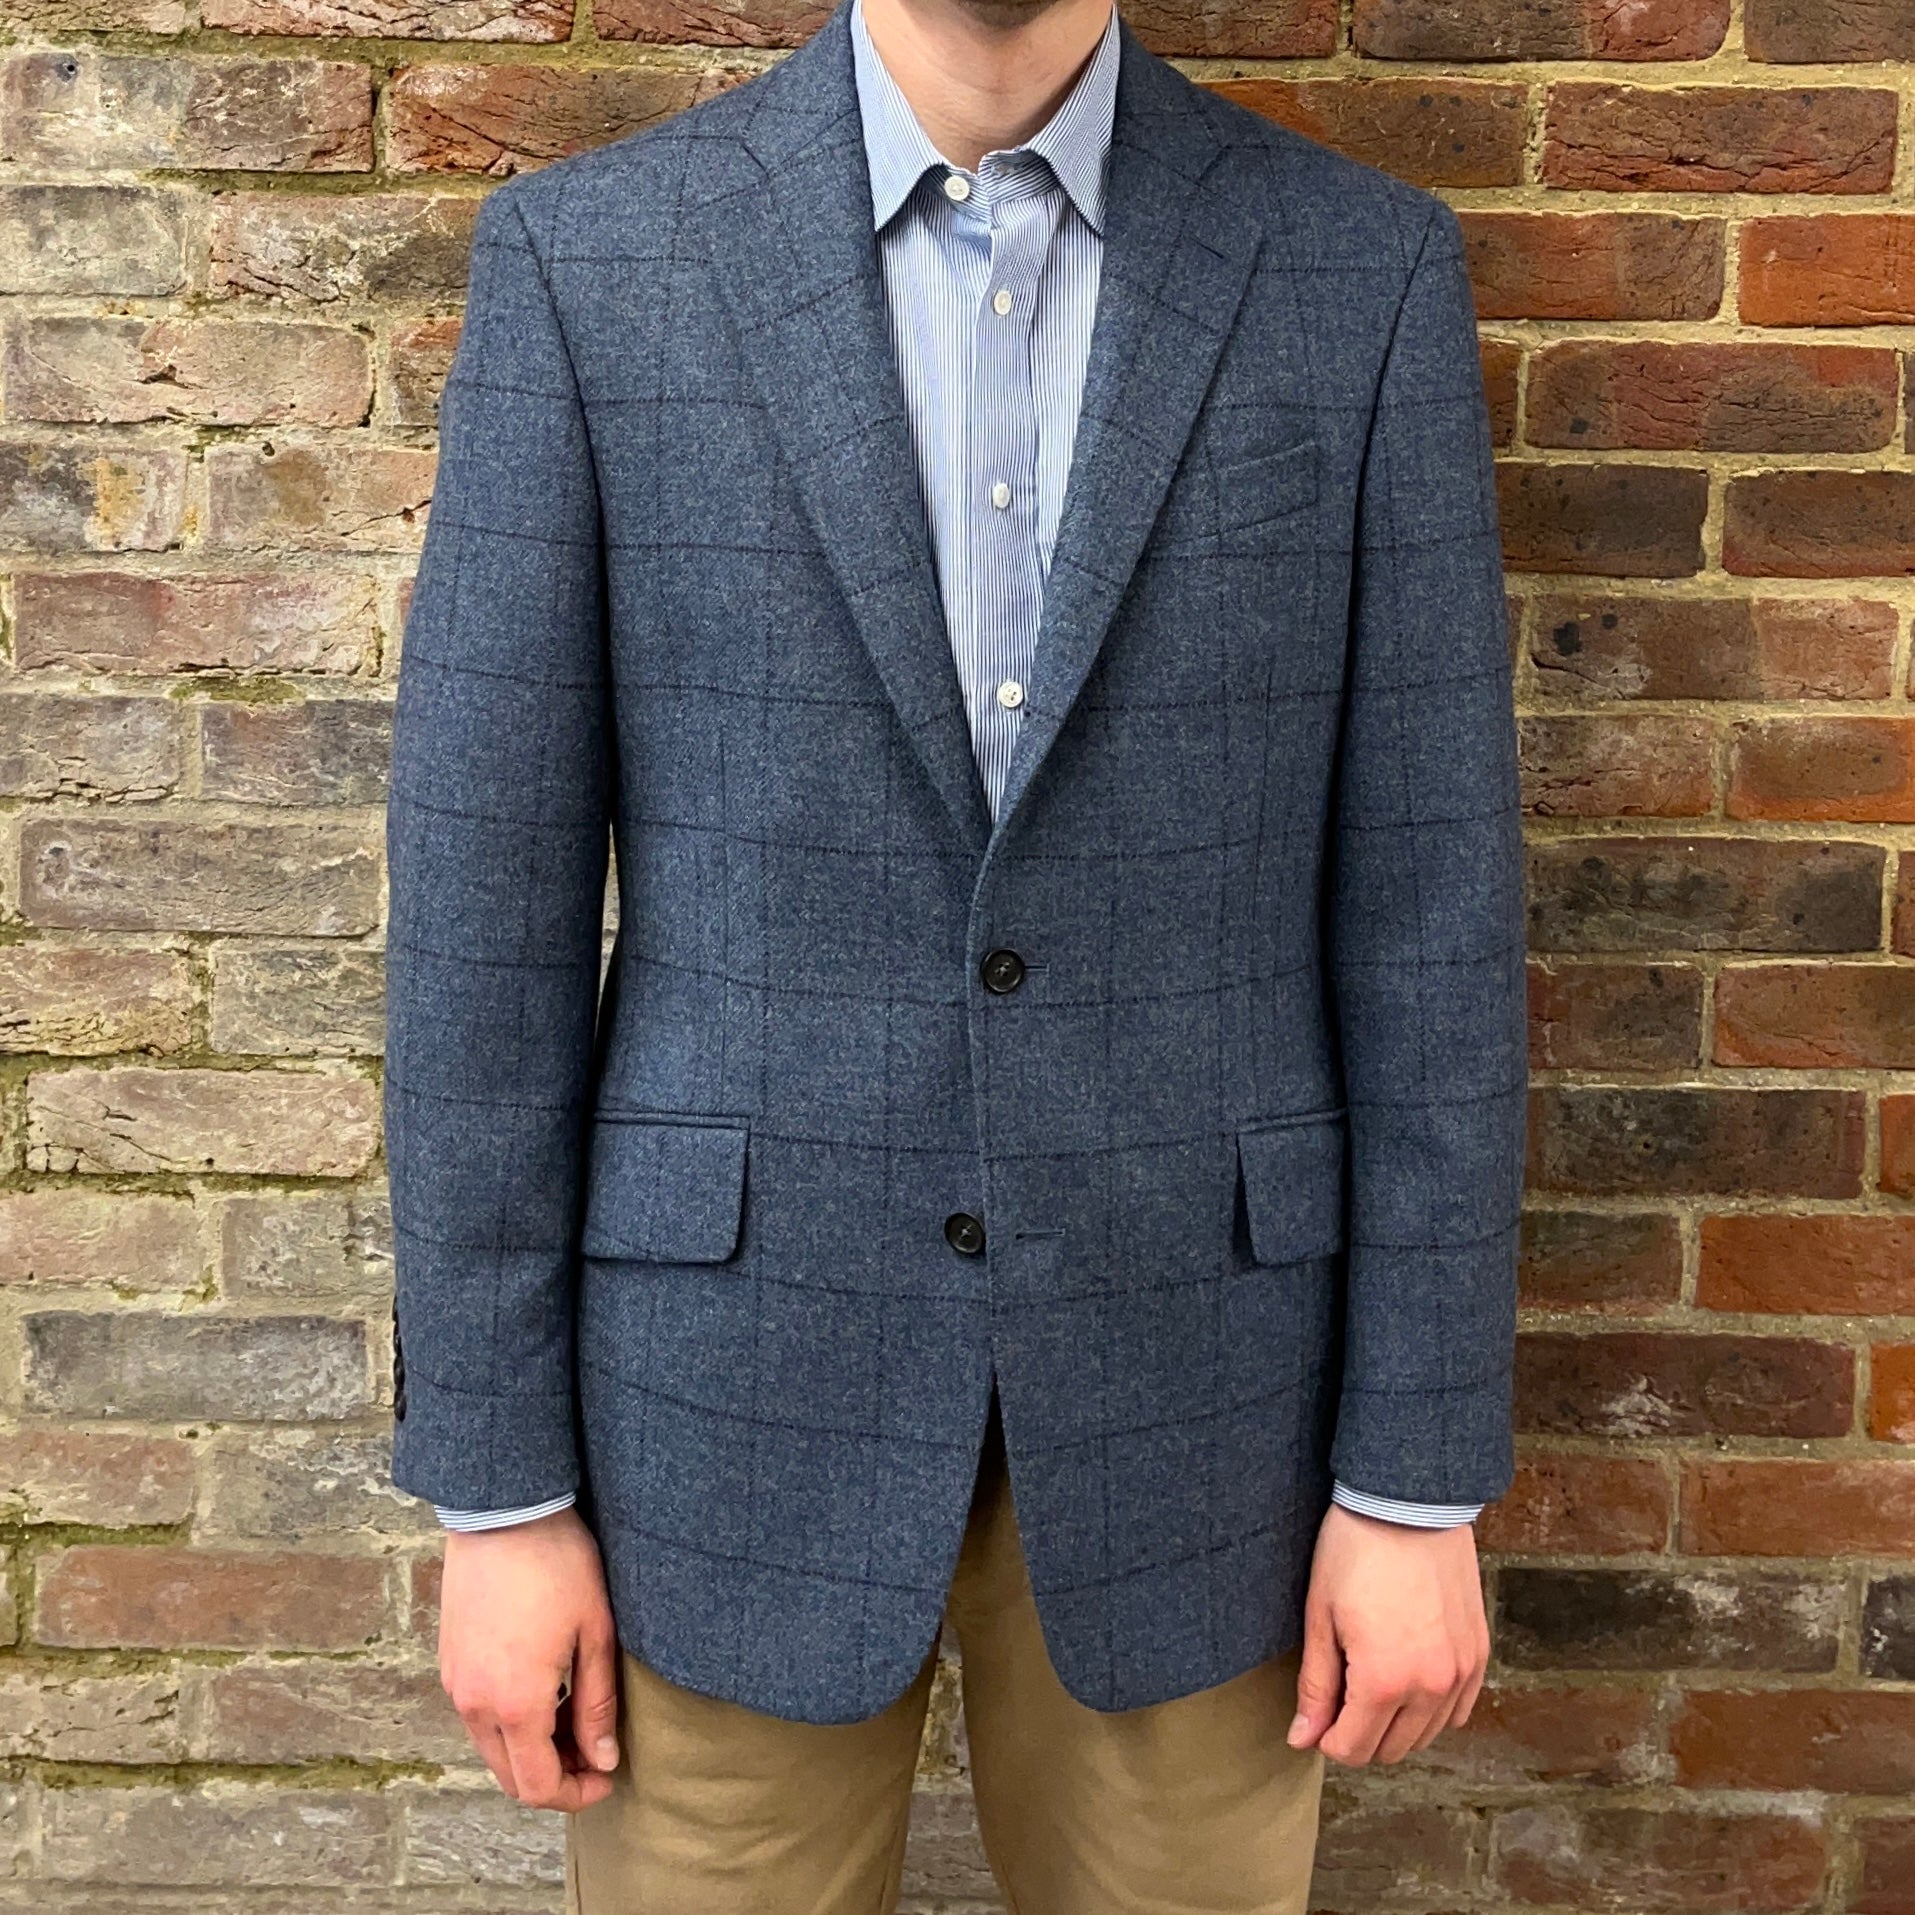 Regent blue tweed jacket with overcheck